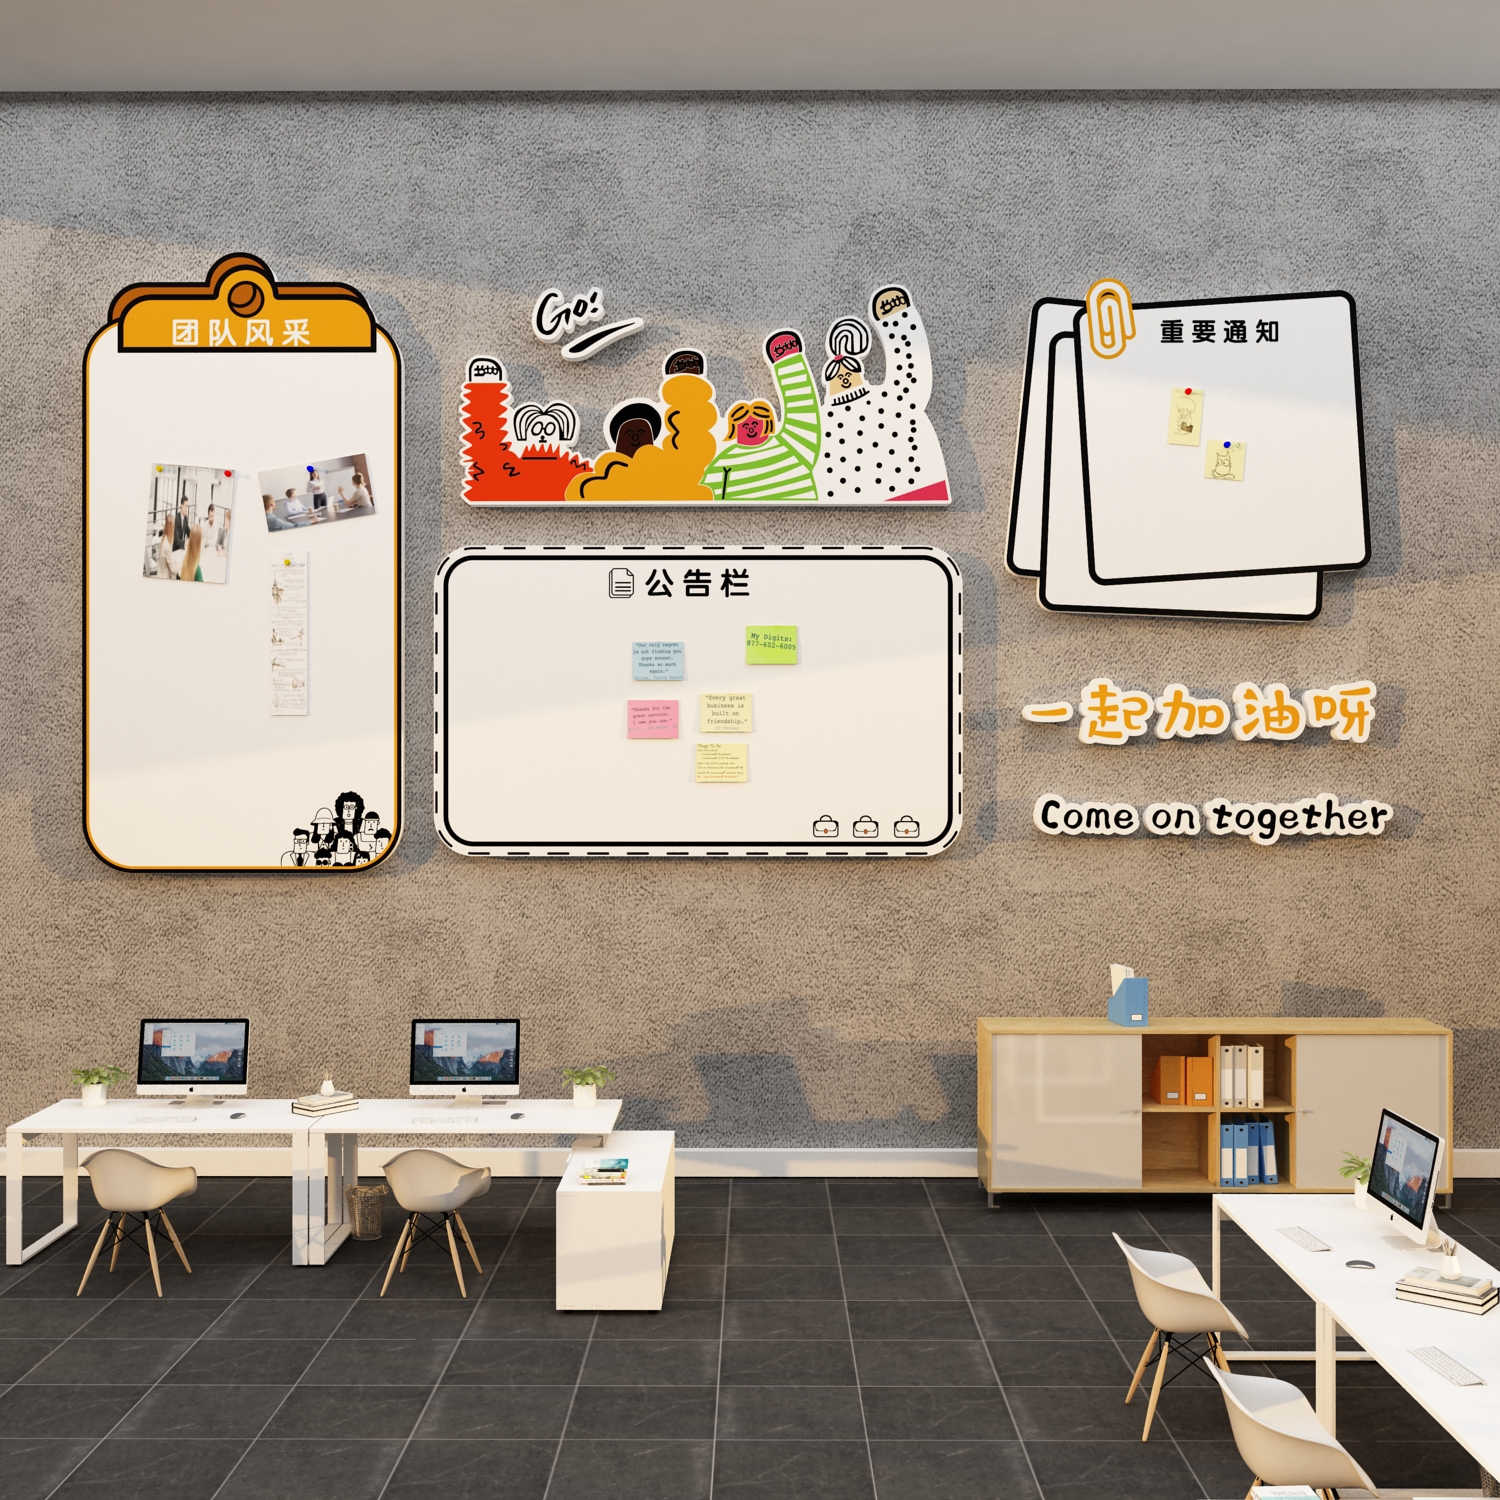 办公室墙面装饰氛围布置企业文化墙贴公司团队风采展示照片公告栏-图2